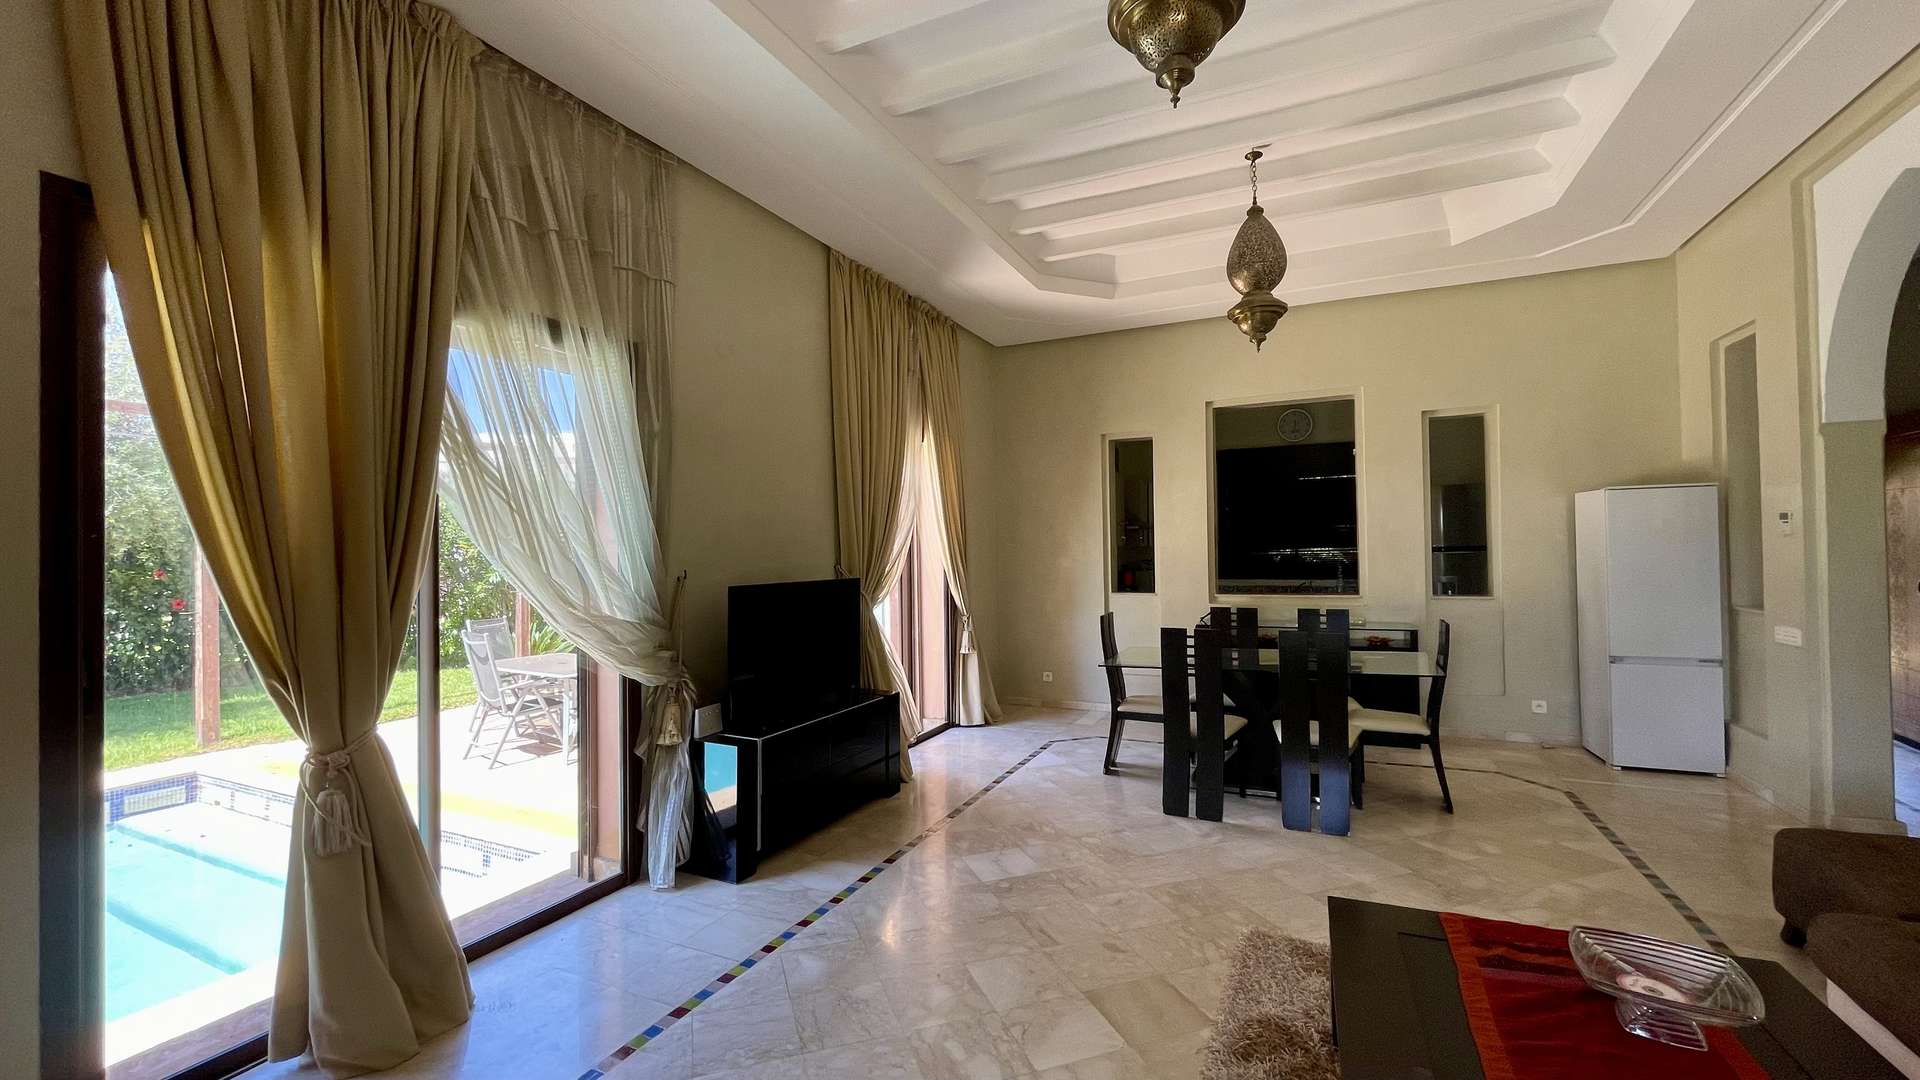 Vente,Villa,Villa mitoyenne 3 chambres à coucher de plain-pieds sur la route de Fès à 20 min. du centre,Marrakech,Route de Fès